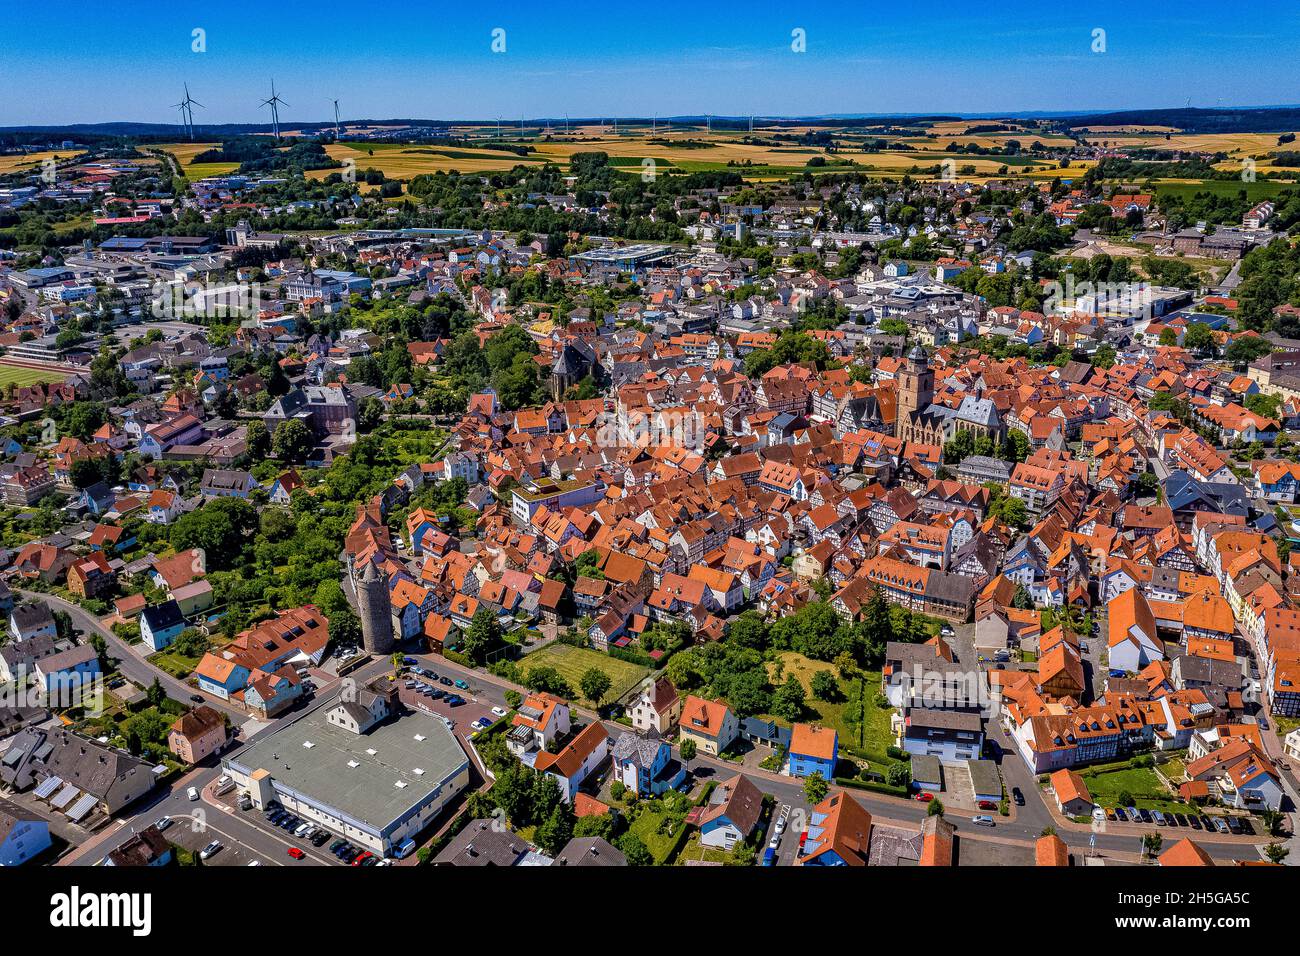 Die Stadt Alsfeld in Hessen aus der Luft - Luftbilder von Alsfeld | German Town Alsfeld in Hesse dall'alto Foto Stock